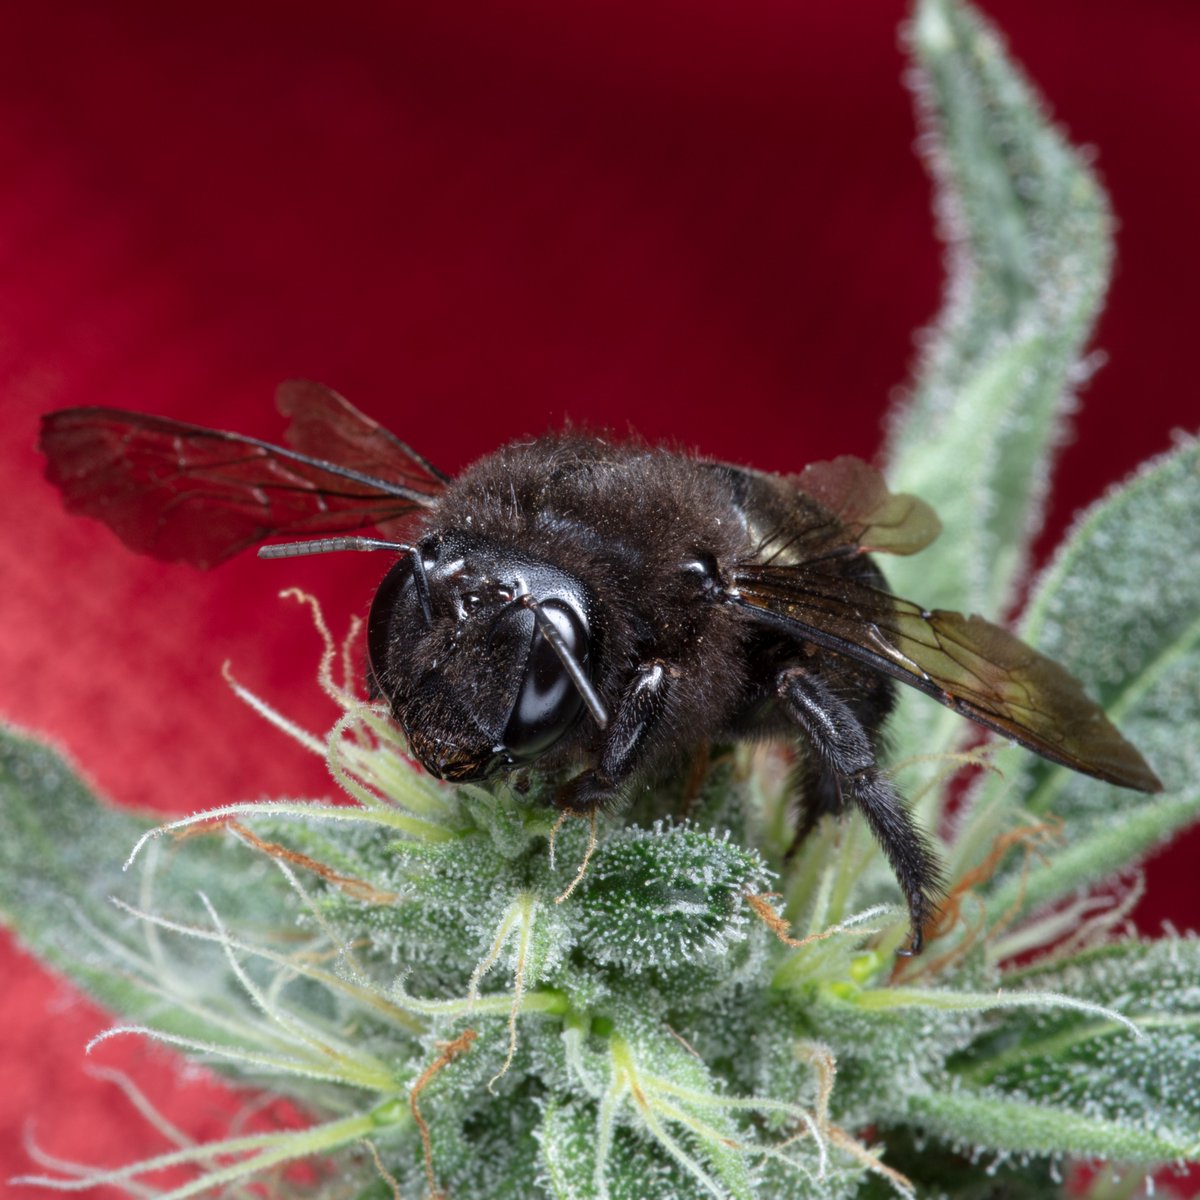 Bee-eautiful! 🖖🐝
#romulangenetics